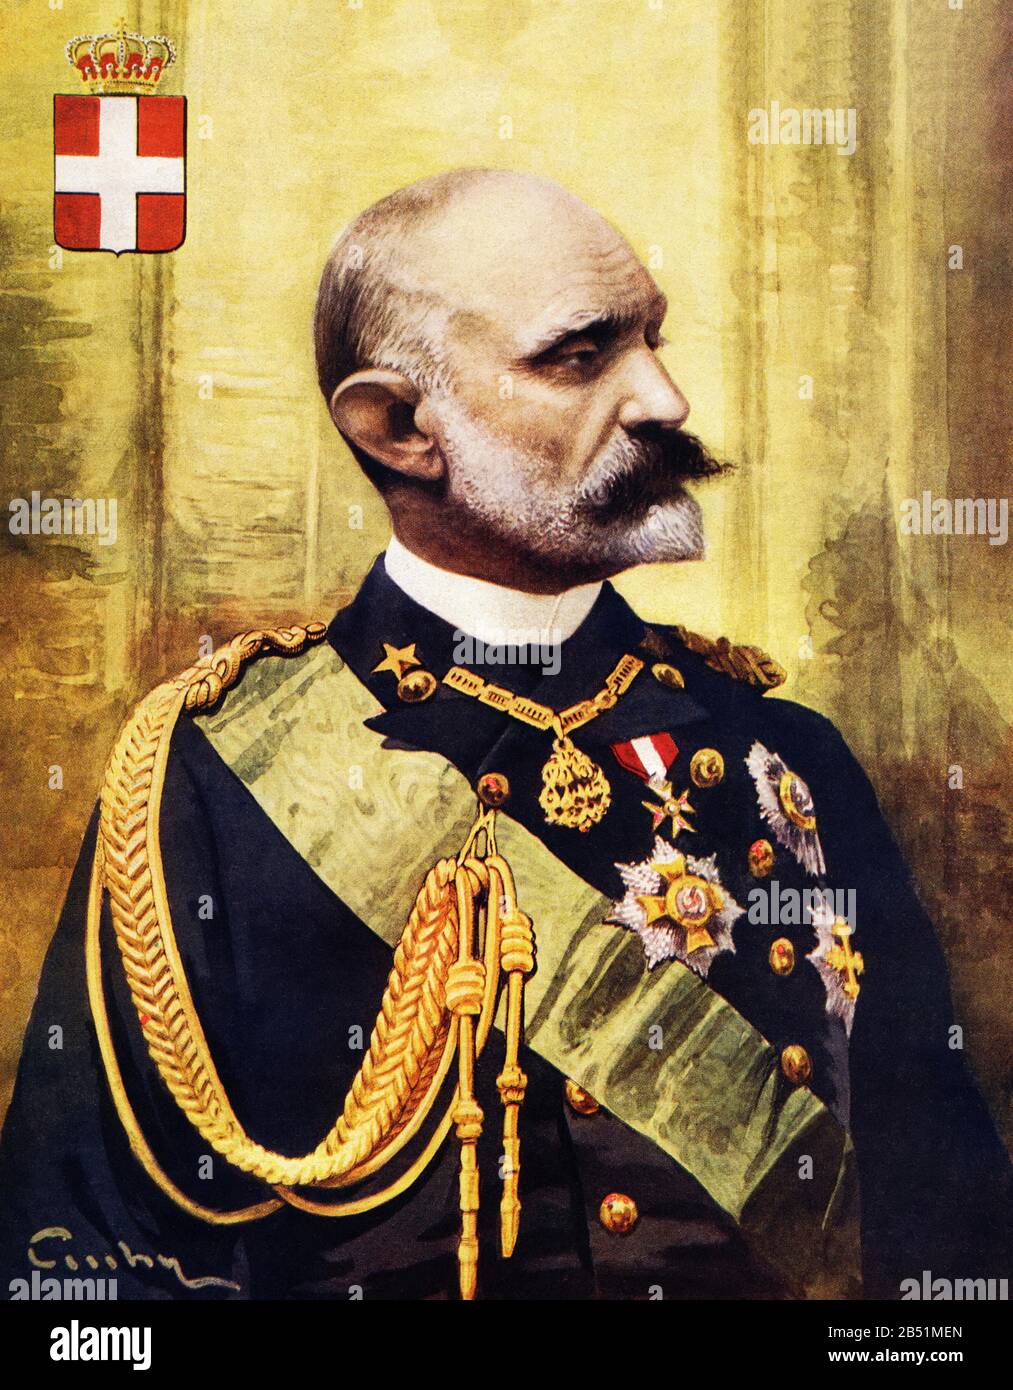 Ritratto a colori del Principe Tommaso di Savoia, II Duca di Genova. Tommaso Alberto Vittorio (Torino 1854 – 1931) è stato un principe italiano, nipote di re Carlo Foto Stock